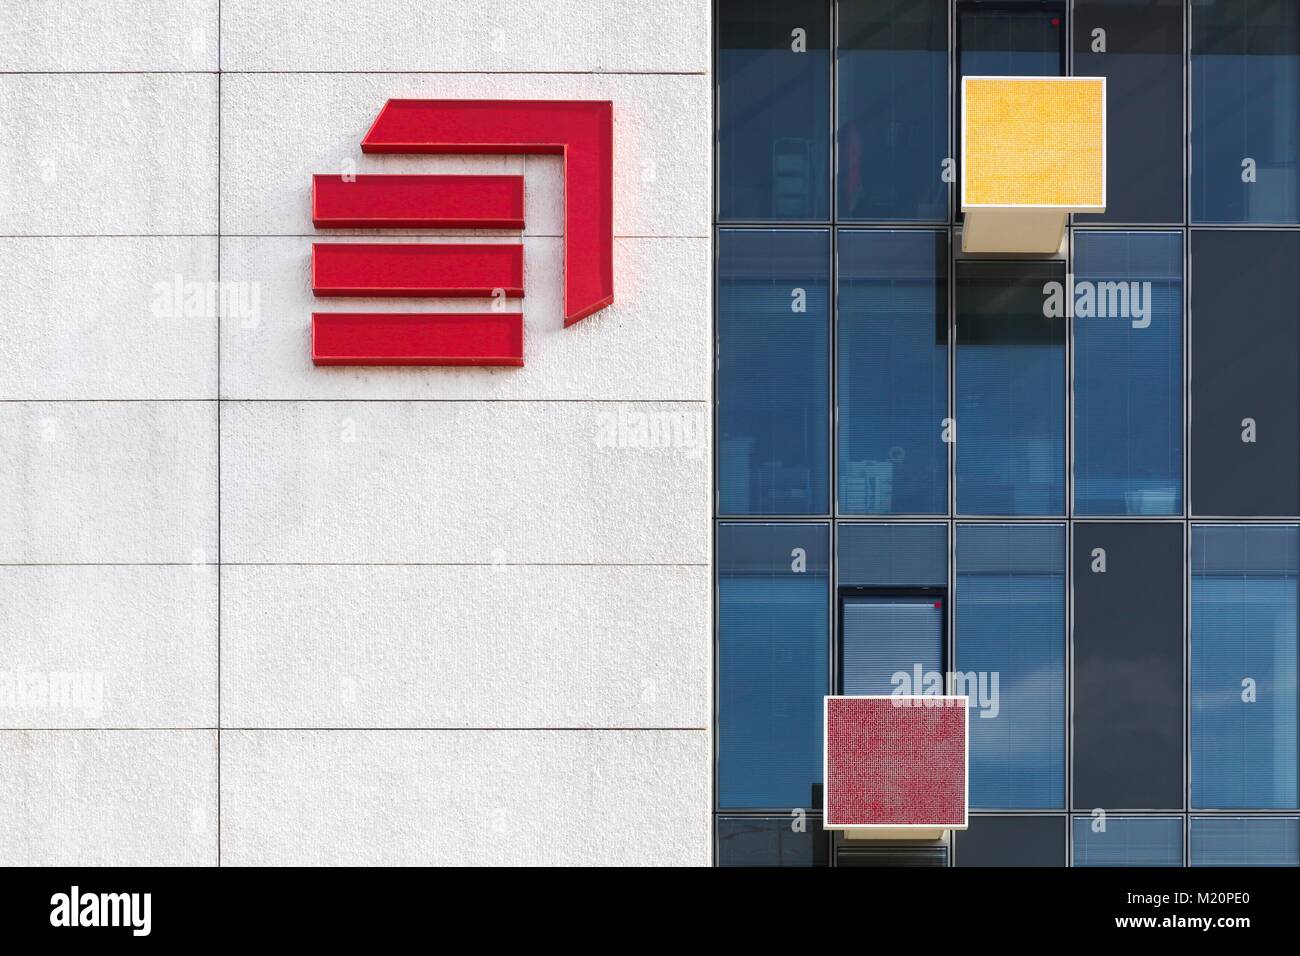 Lyon, France 15 mars 2017 : Eiffage bâtiment administratif avec le logo de la société sur un mur. Eiffage est une entreprise de construction française Banque D'Images